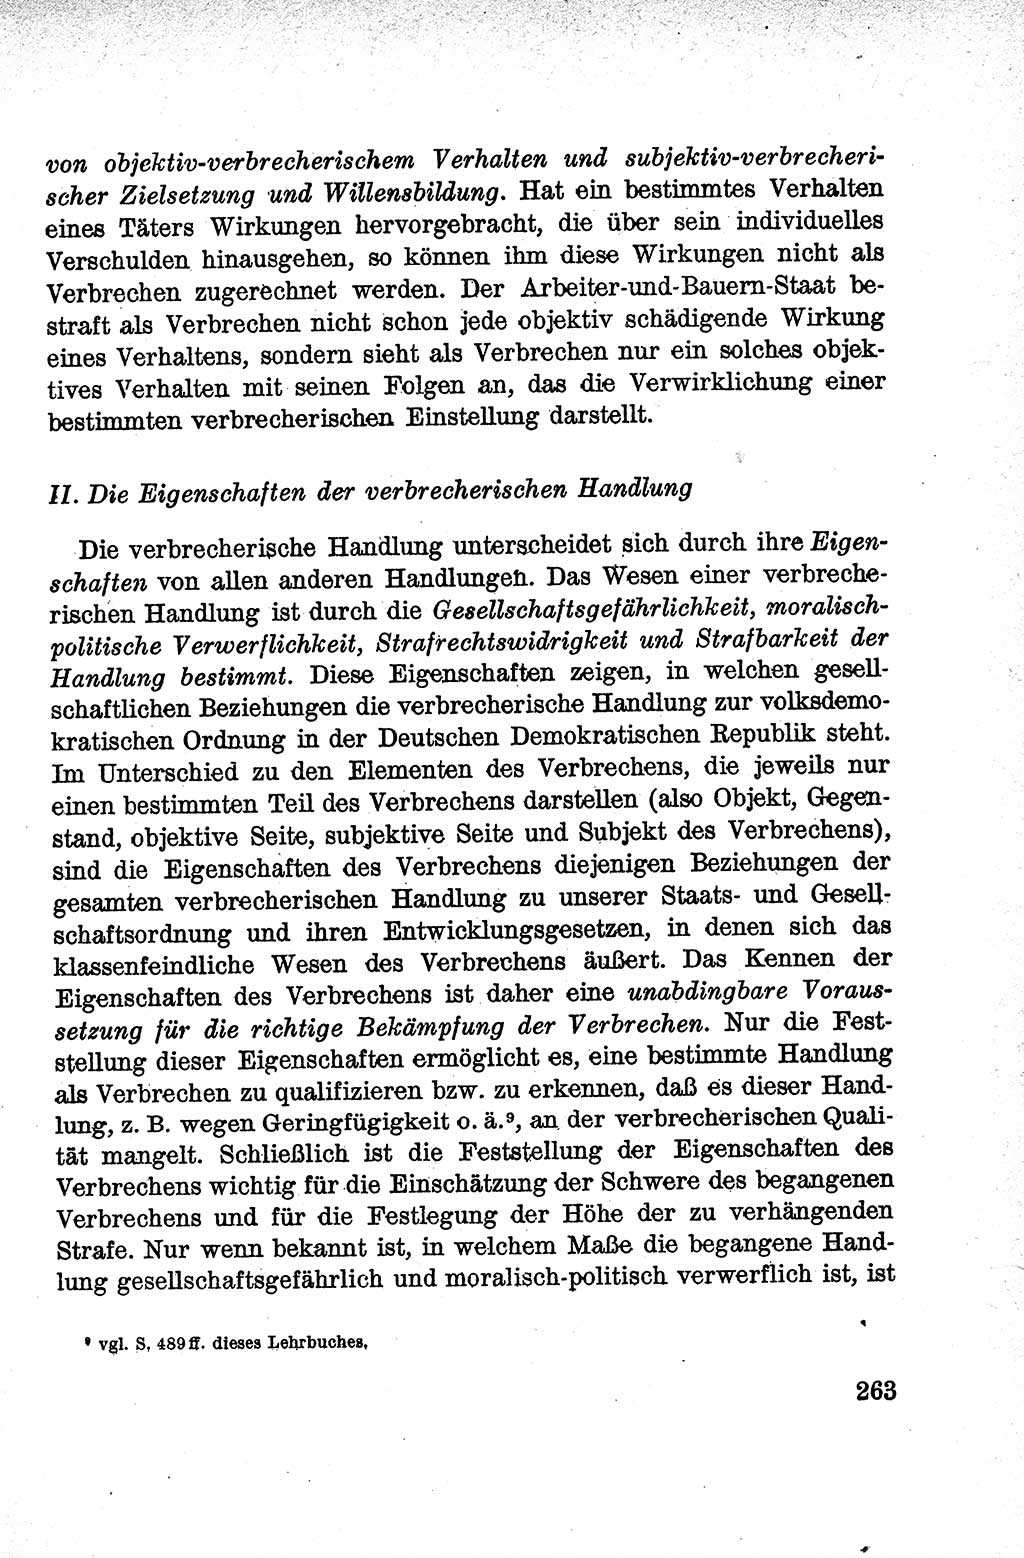 Lehrbuch des Strafrechts der Deutschen Demokratischen Republik (DDR), Allgemeiner Teil 1959, Seite 263 (Lb. Strafr. DDR AT 1959, S. 263)